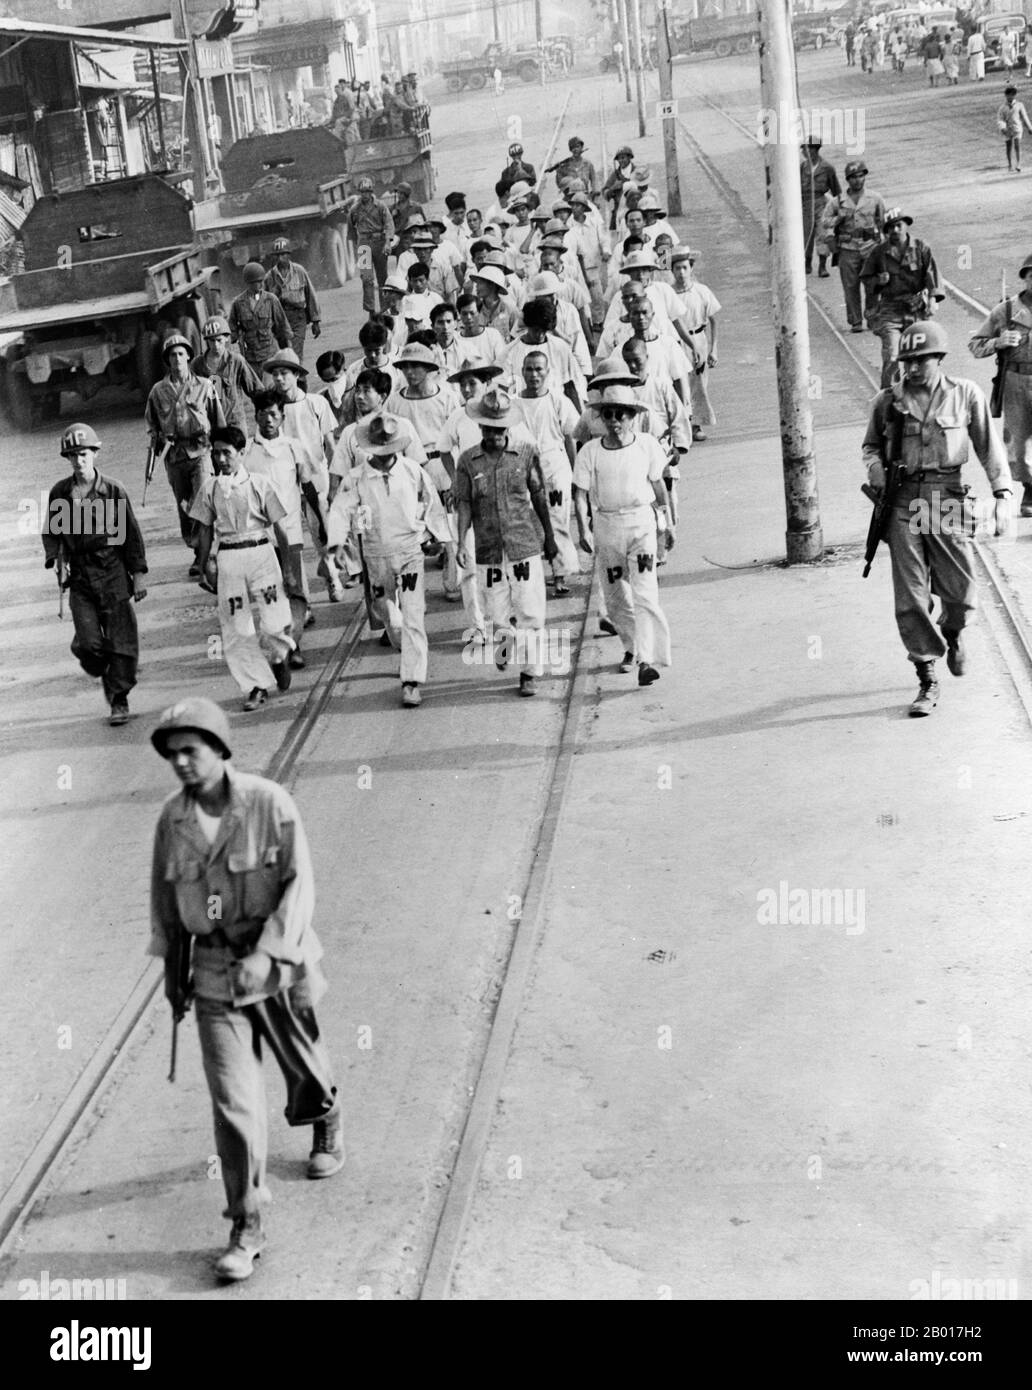 Philippinen: Japanische Kriegsgefangene unter amerikanischer militärischer Aufsicht, 1945. Japanische Kriegsgefangene, die nach der Schlacht von Manila im Jahr 1945 bei der massiven Säuberung halfen. Stockfoto